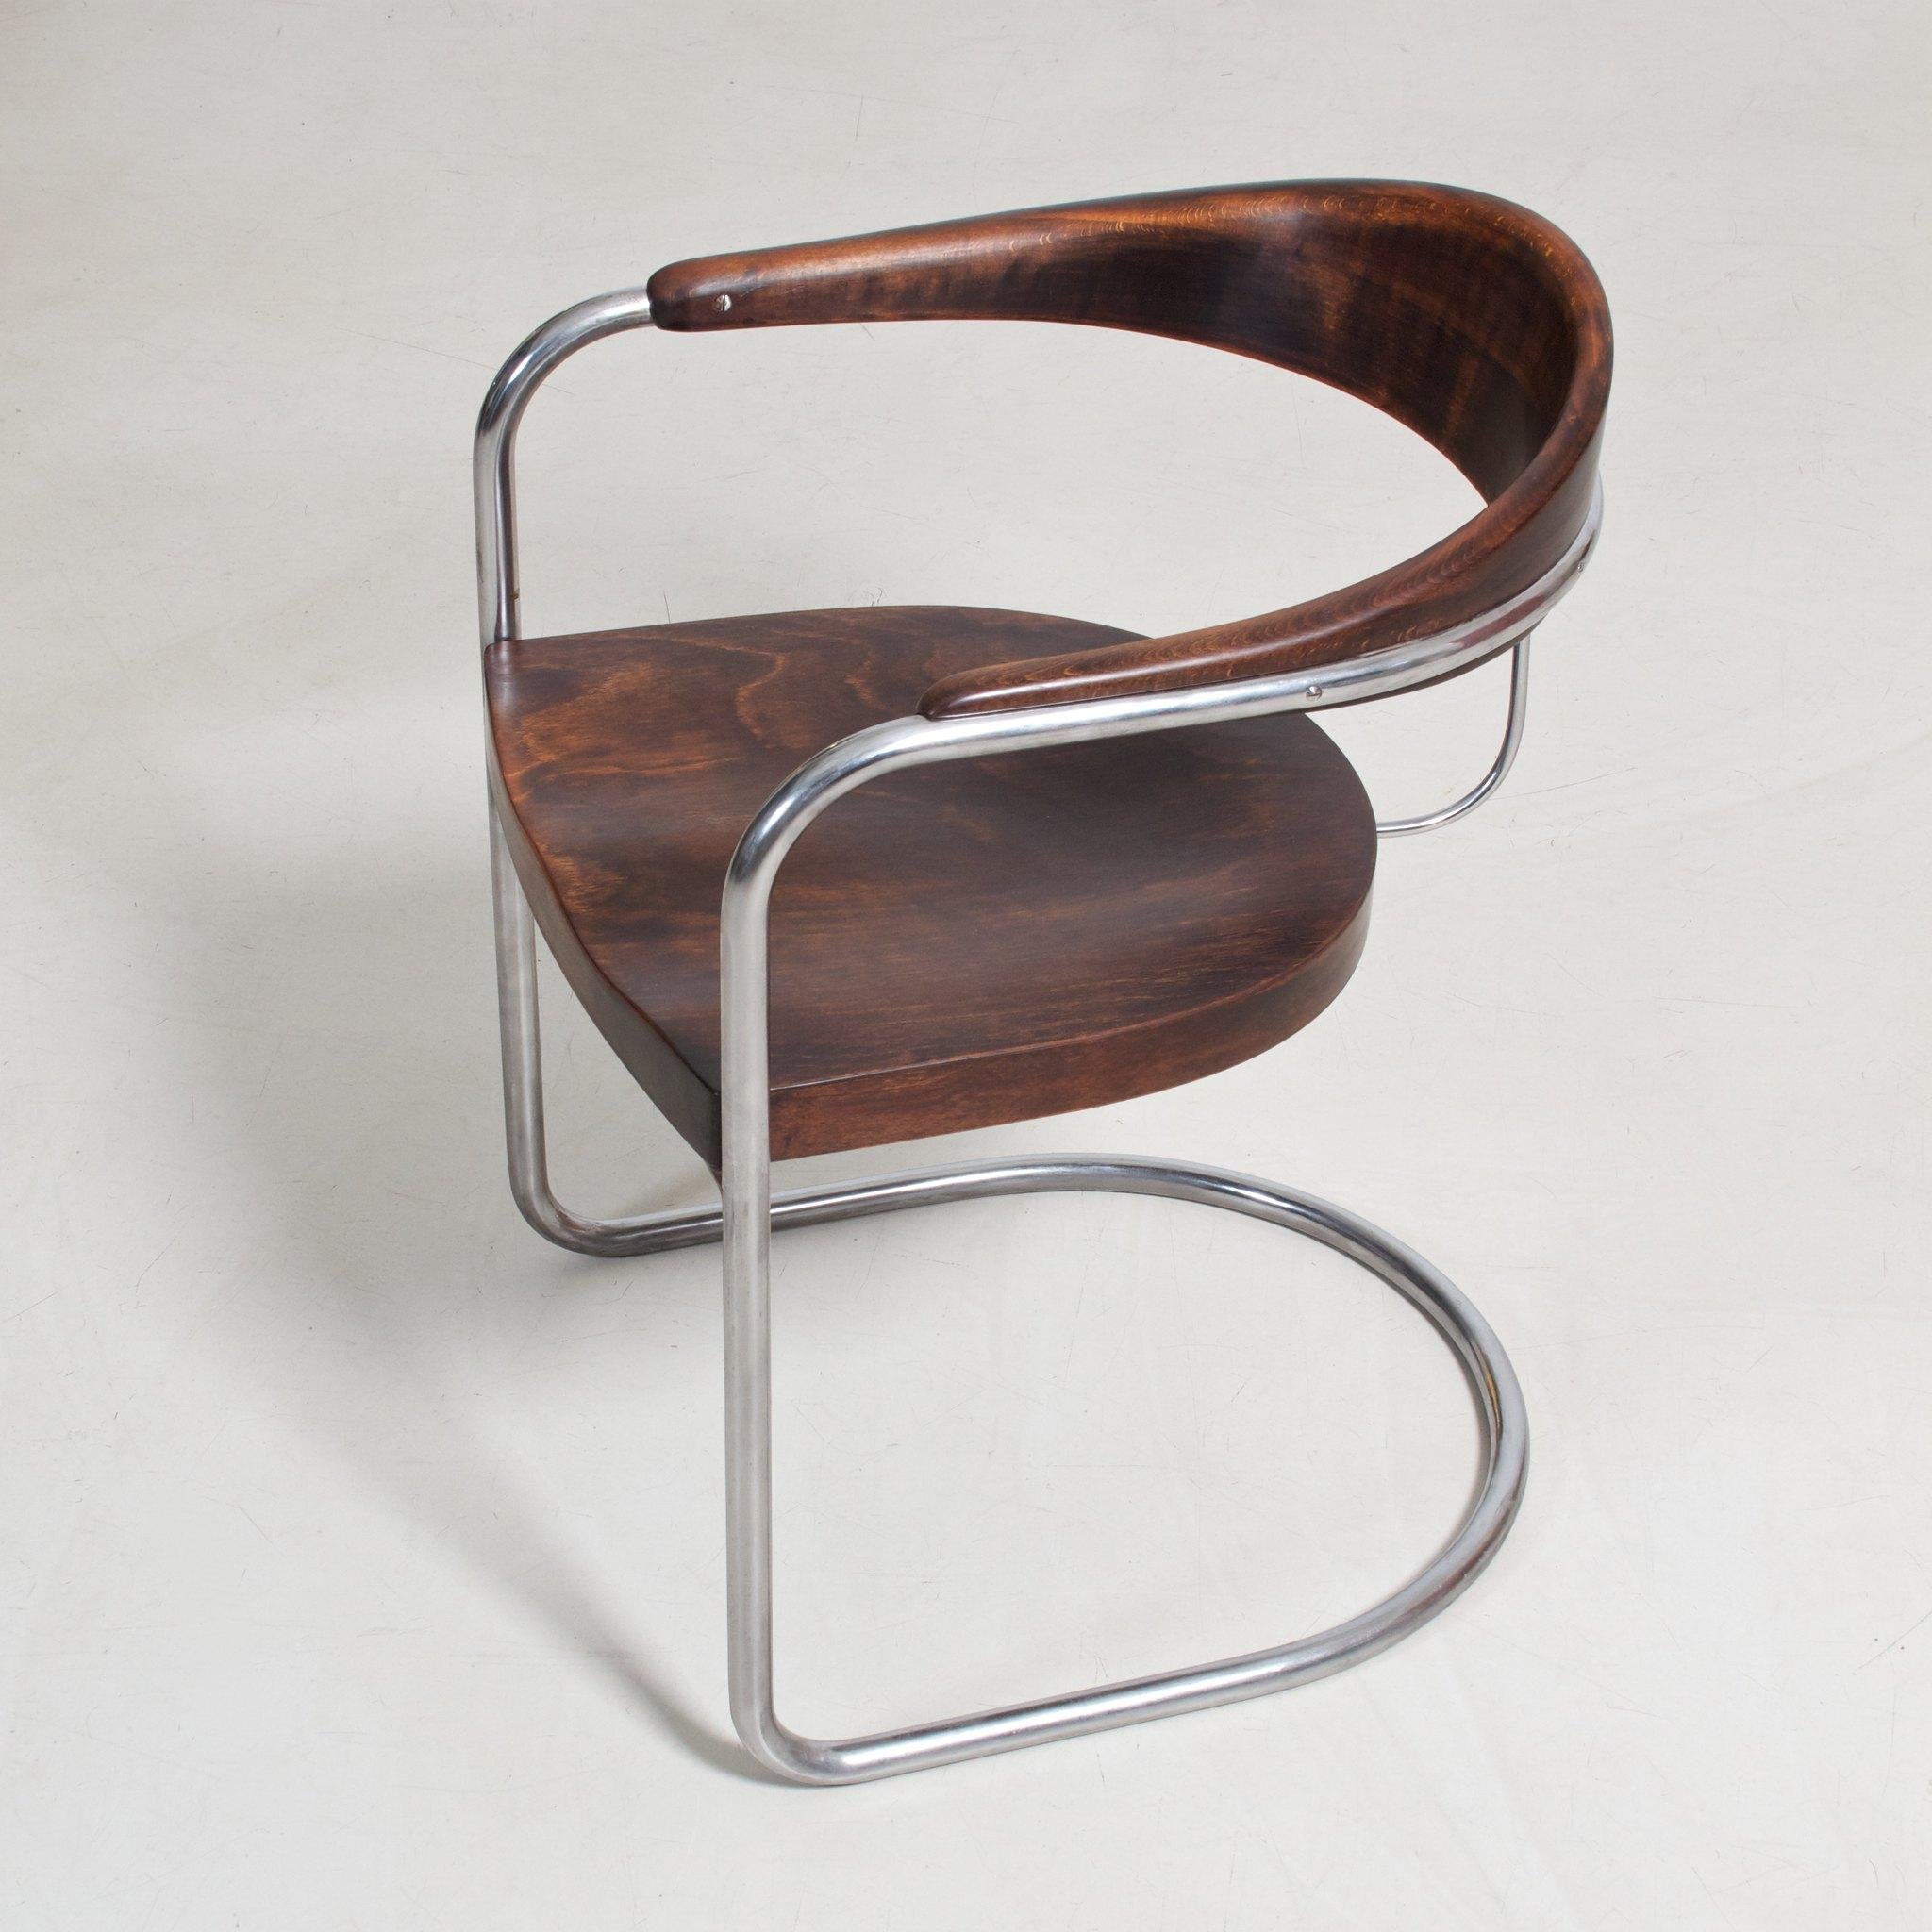 Chaise luge Bauhaus SS 33 conçue par Hans et Wassili Luckhardt. Acier tubulaire chromé et bois teinté, fabriqué vers 1930.

Cet article est restauré sur demande et disponible en différentes quantités. 
Délai de livraison : 8-9 semaines.